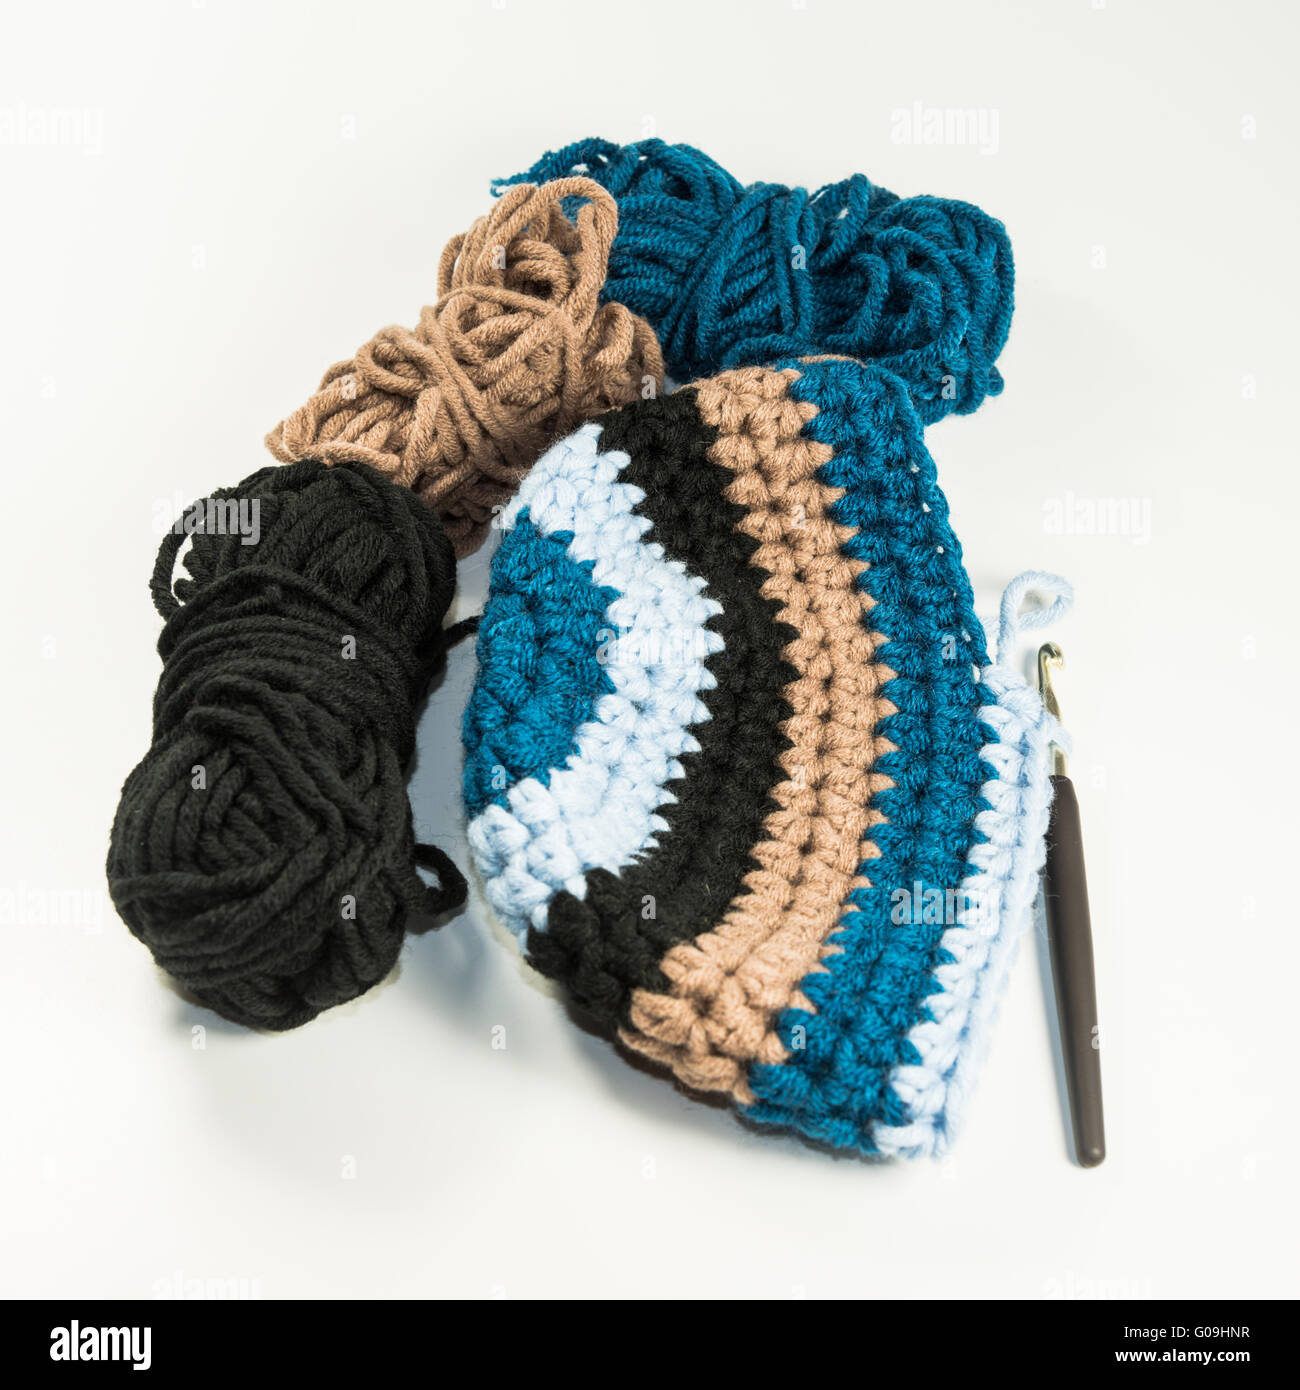 Wool hat, wool, crochet hook Stock Photo